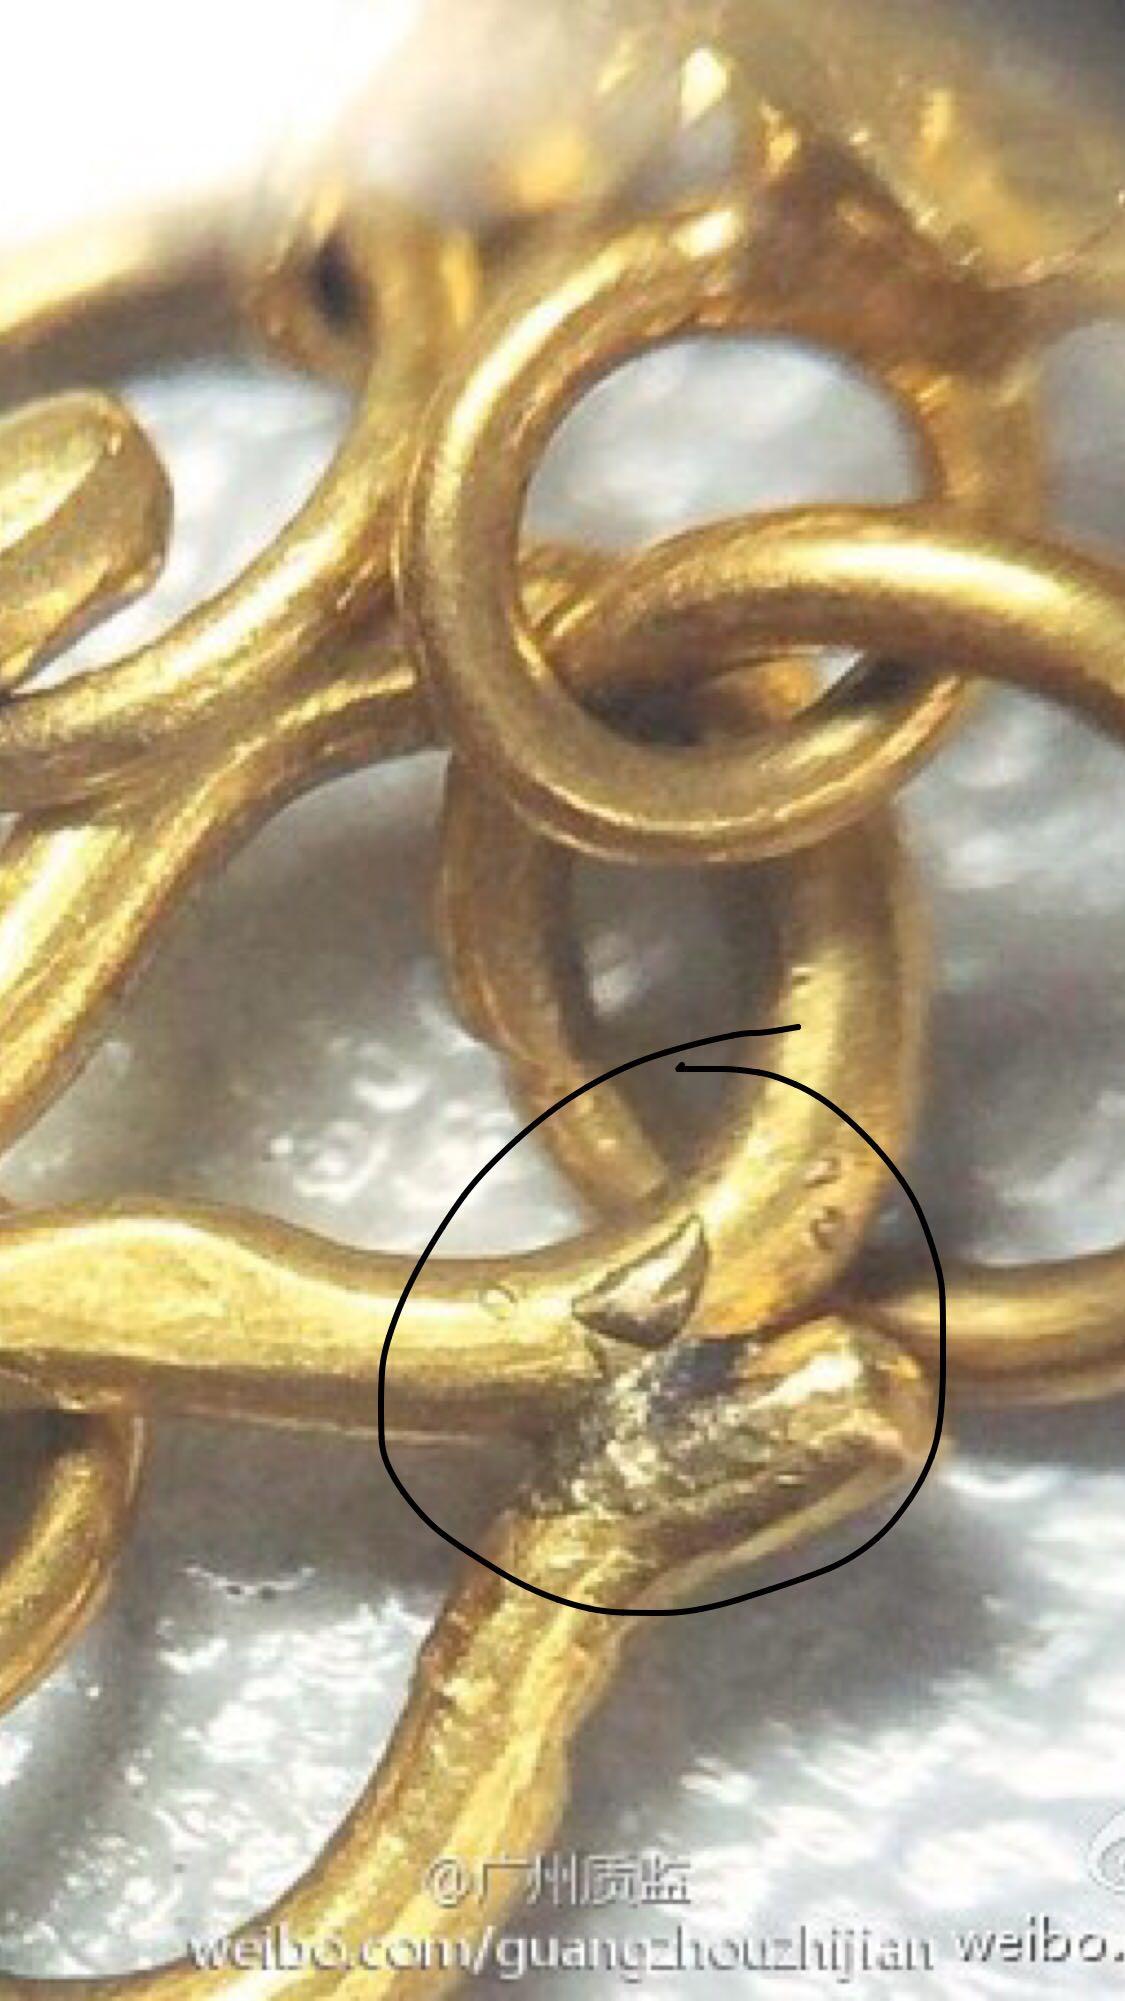 长期戴黄金饰品对人体有害吗?彩金呢?镀金呢